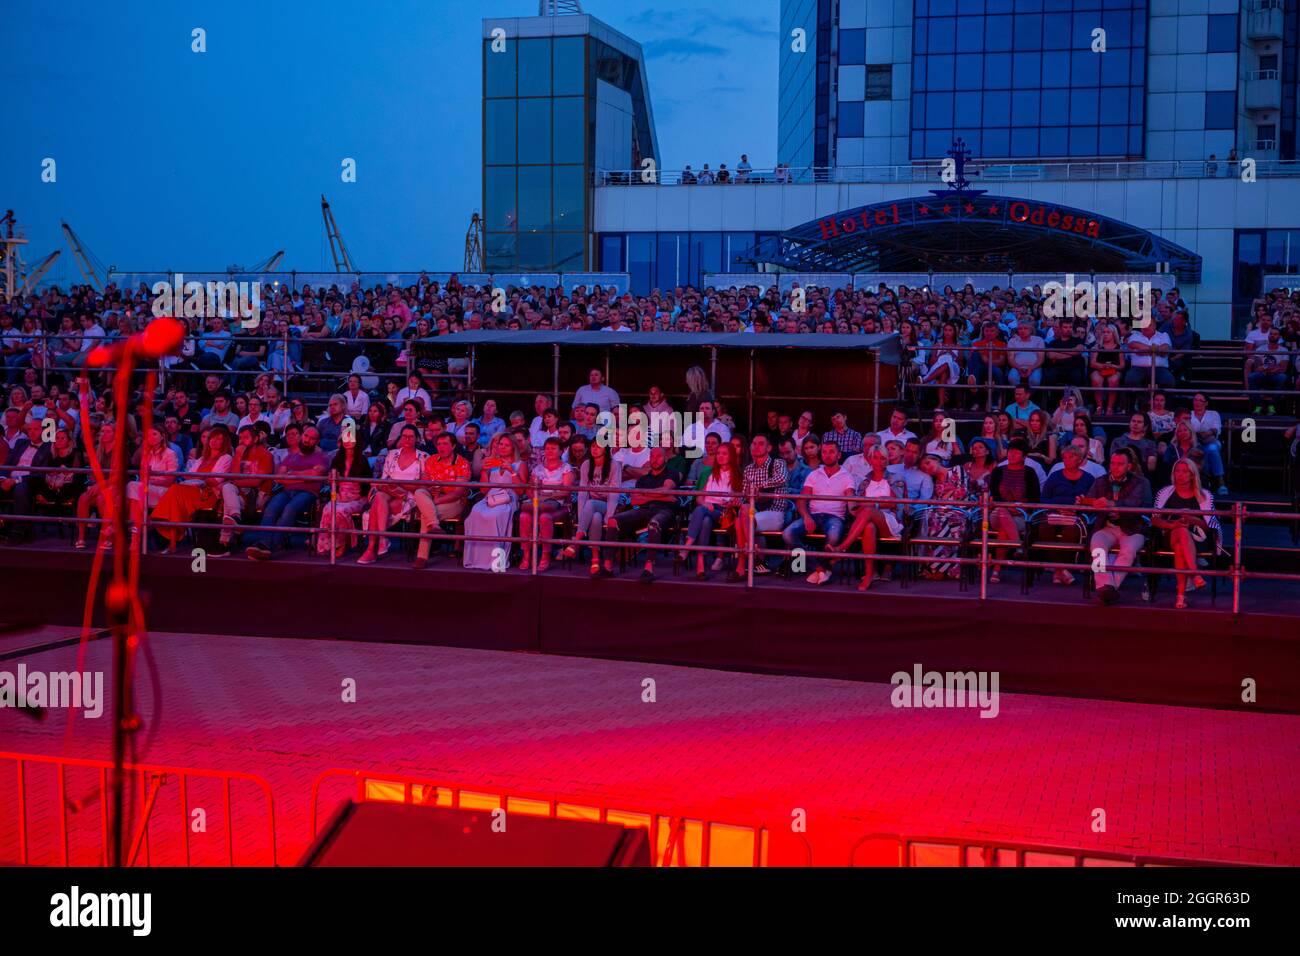 Odessa, Ukraine 17. Juli 2019: Viele Zuschauer beim Konzert. Menge von Besuchern zum Konzert hat Spaß und schießt, was auf Smartphones passiert. Lüfter bei c Stockfoto